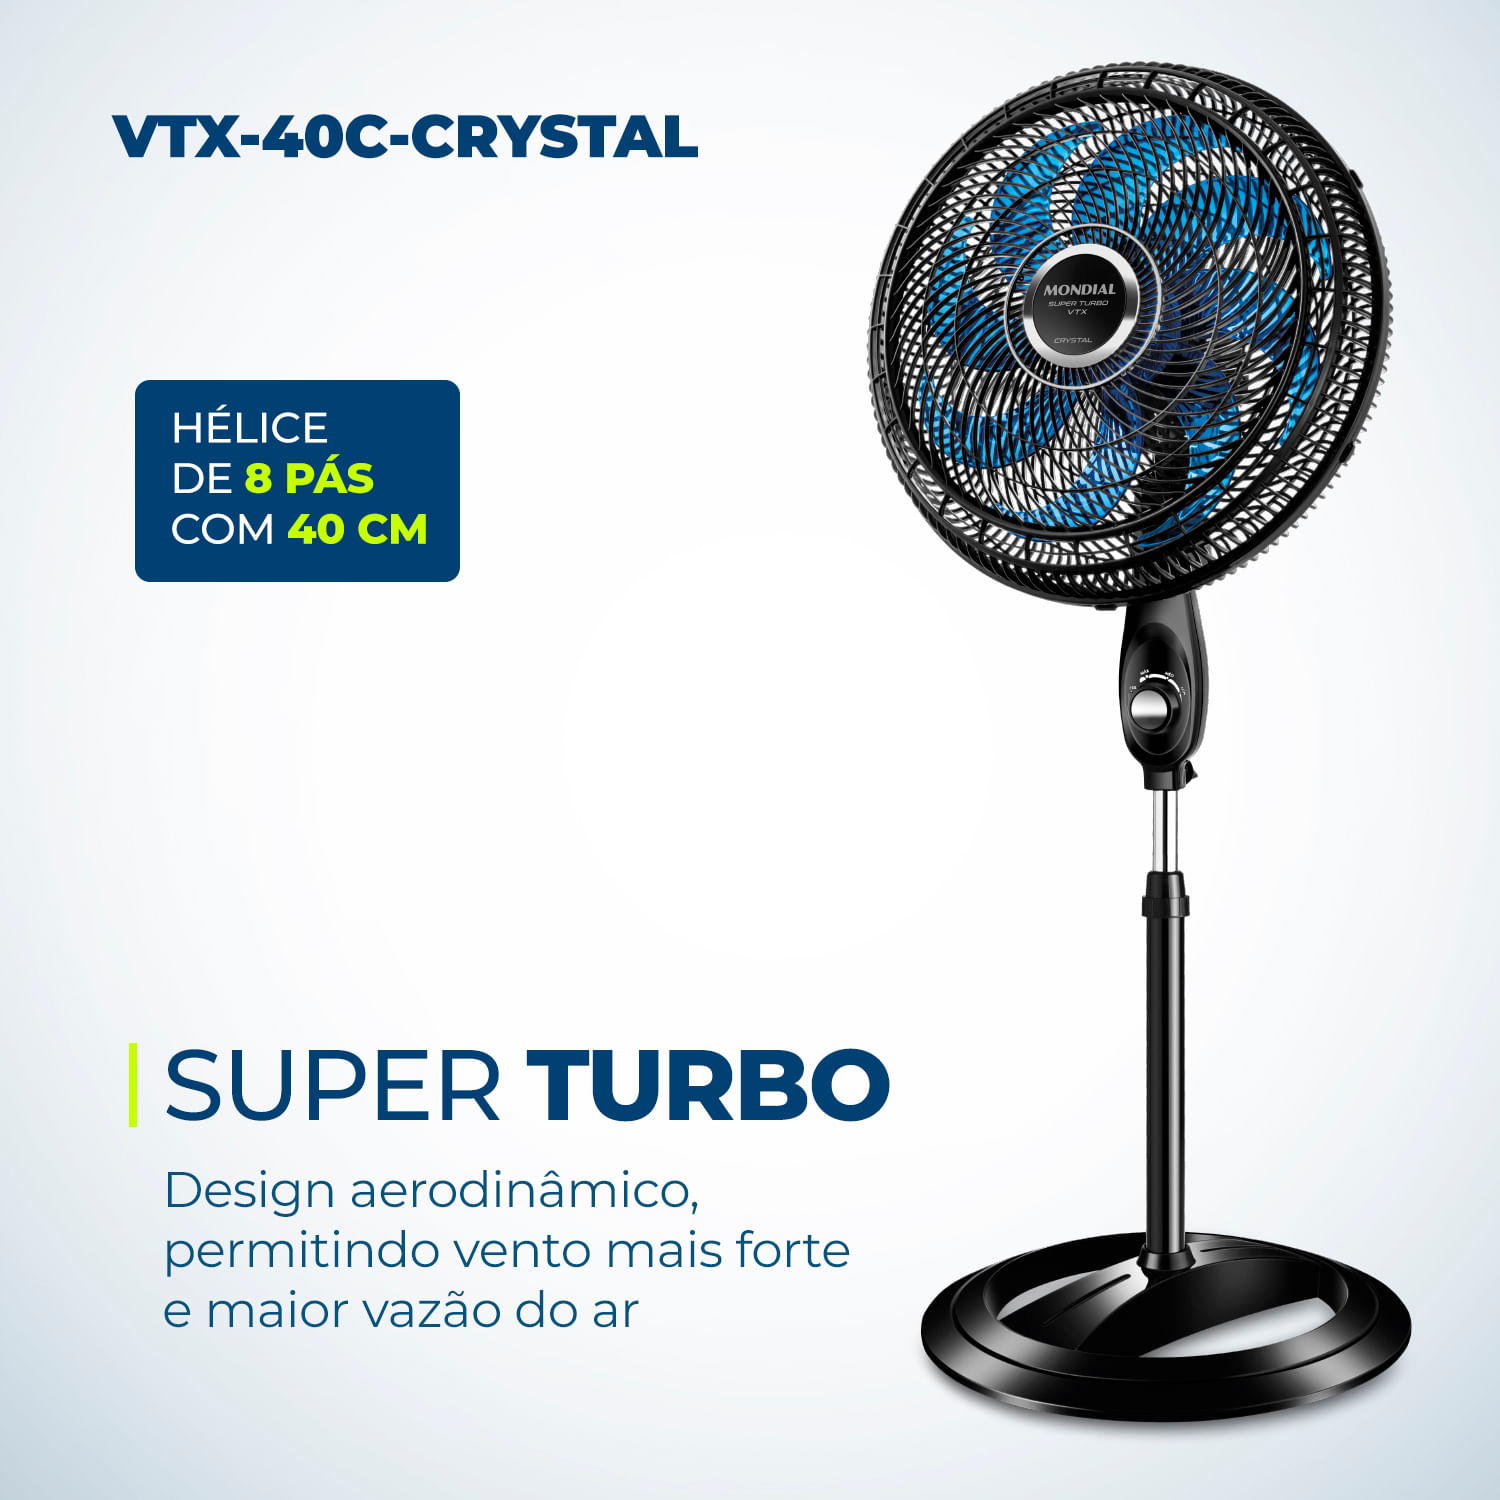 Ventilador de Coluna Super Turbo 8 Pás Mondial - VTX-40C-CRYSTAL - Mondial